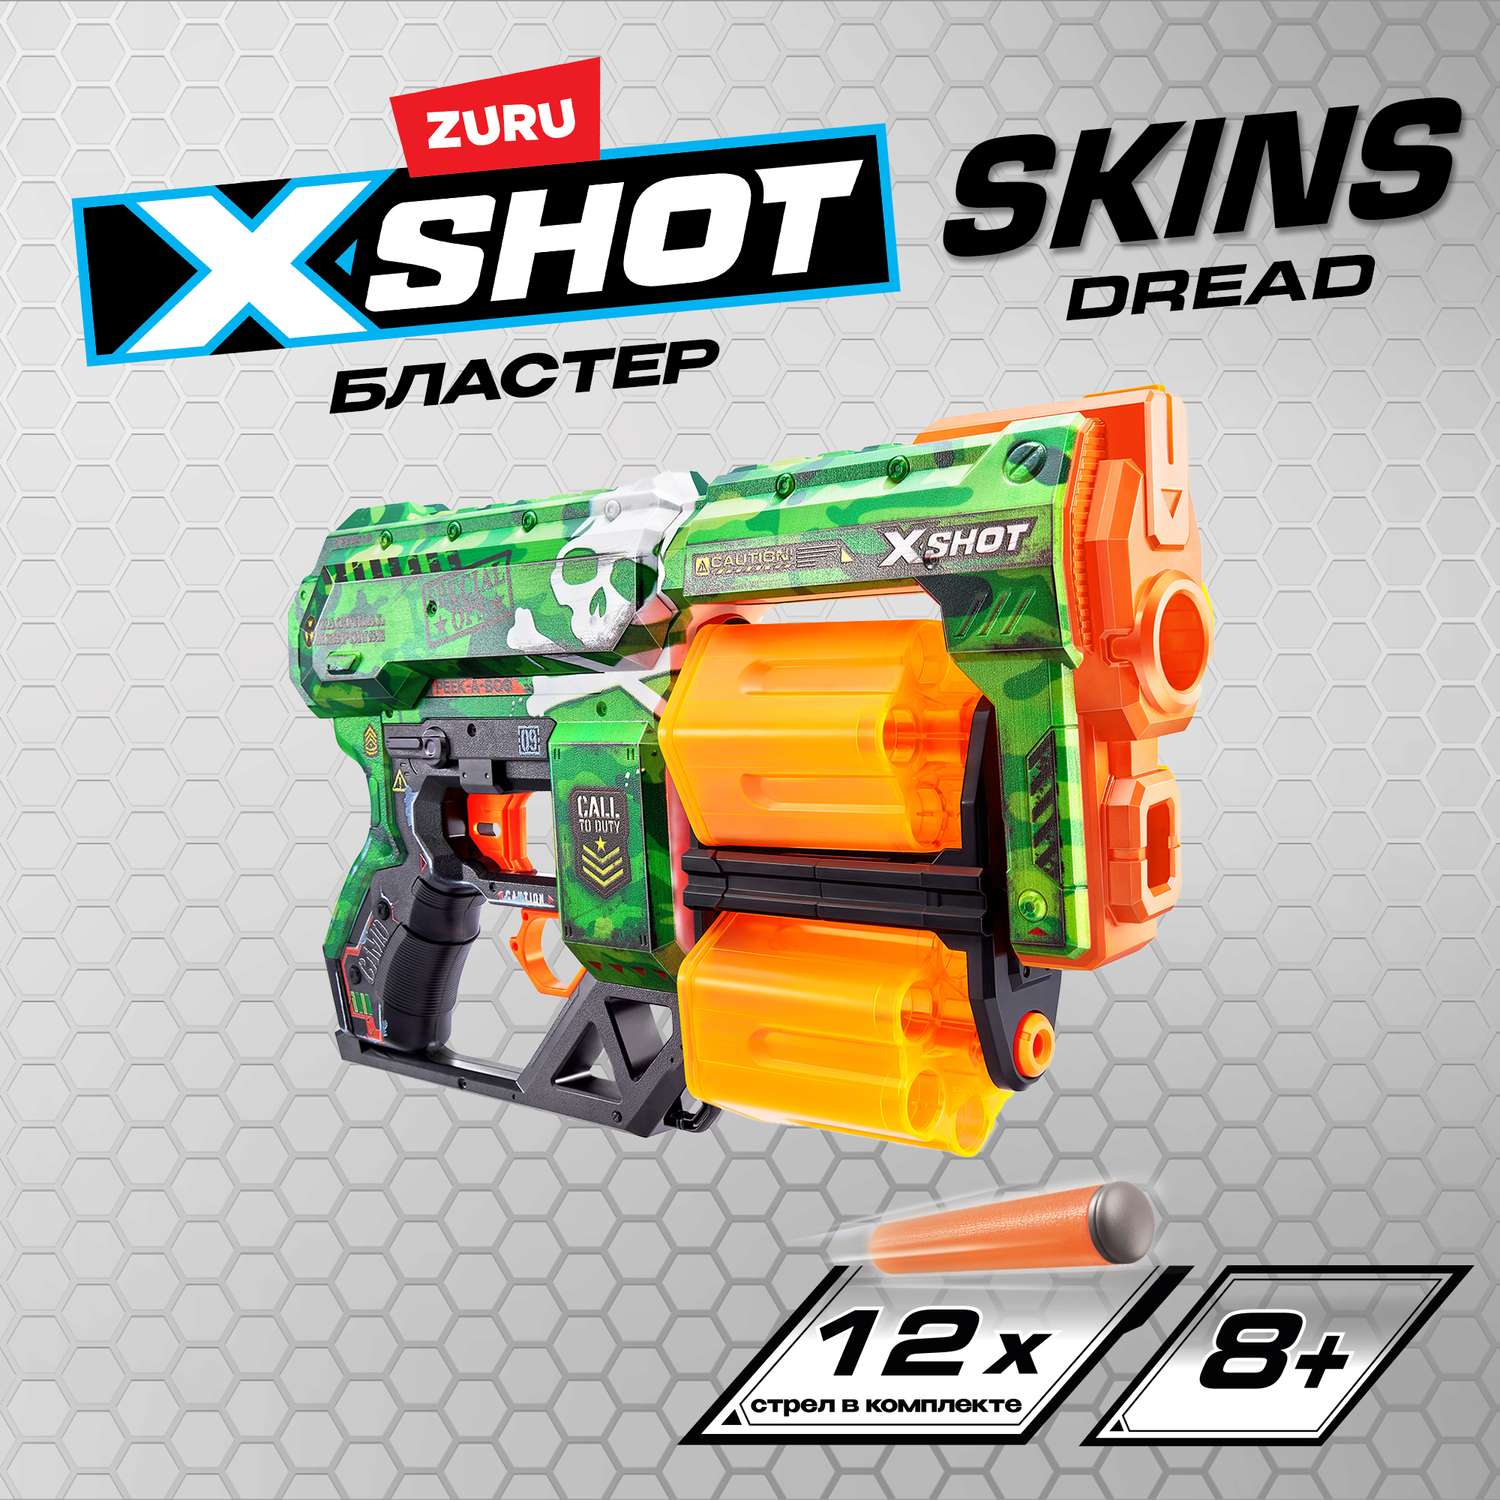 Набор для стрельбы X-SHOT  Скинс дред Слайм 36517D - фото 1